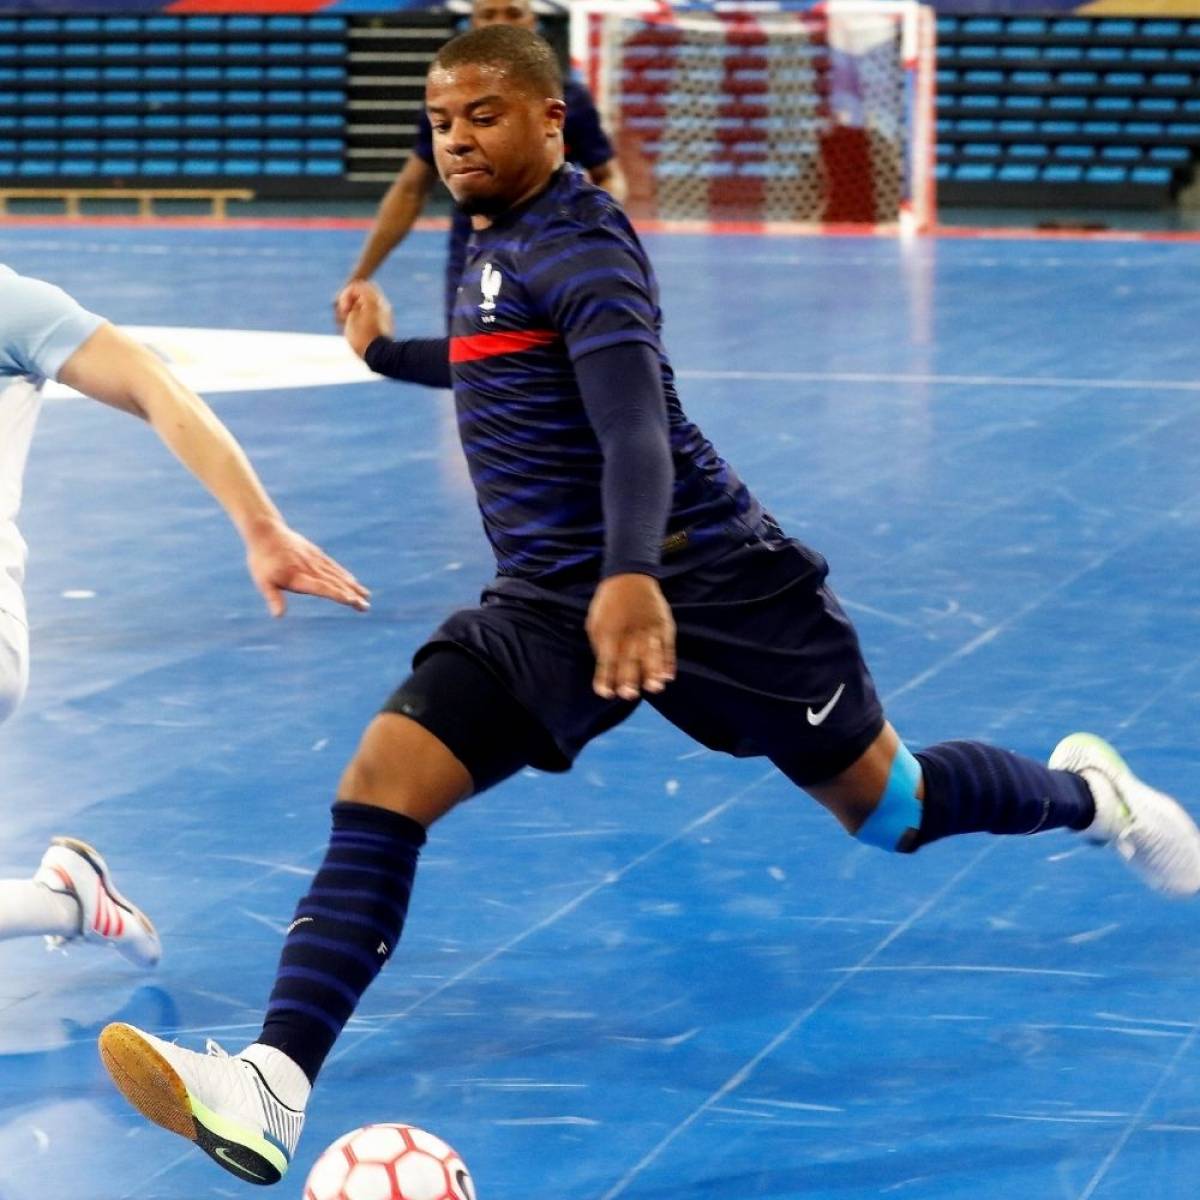 Chaussure de Futsal: que choisir pour la pratique du Foot en Salle